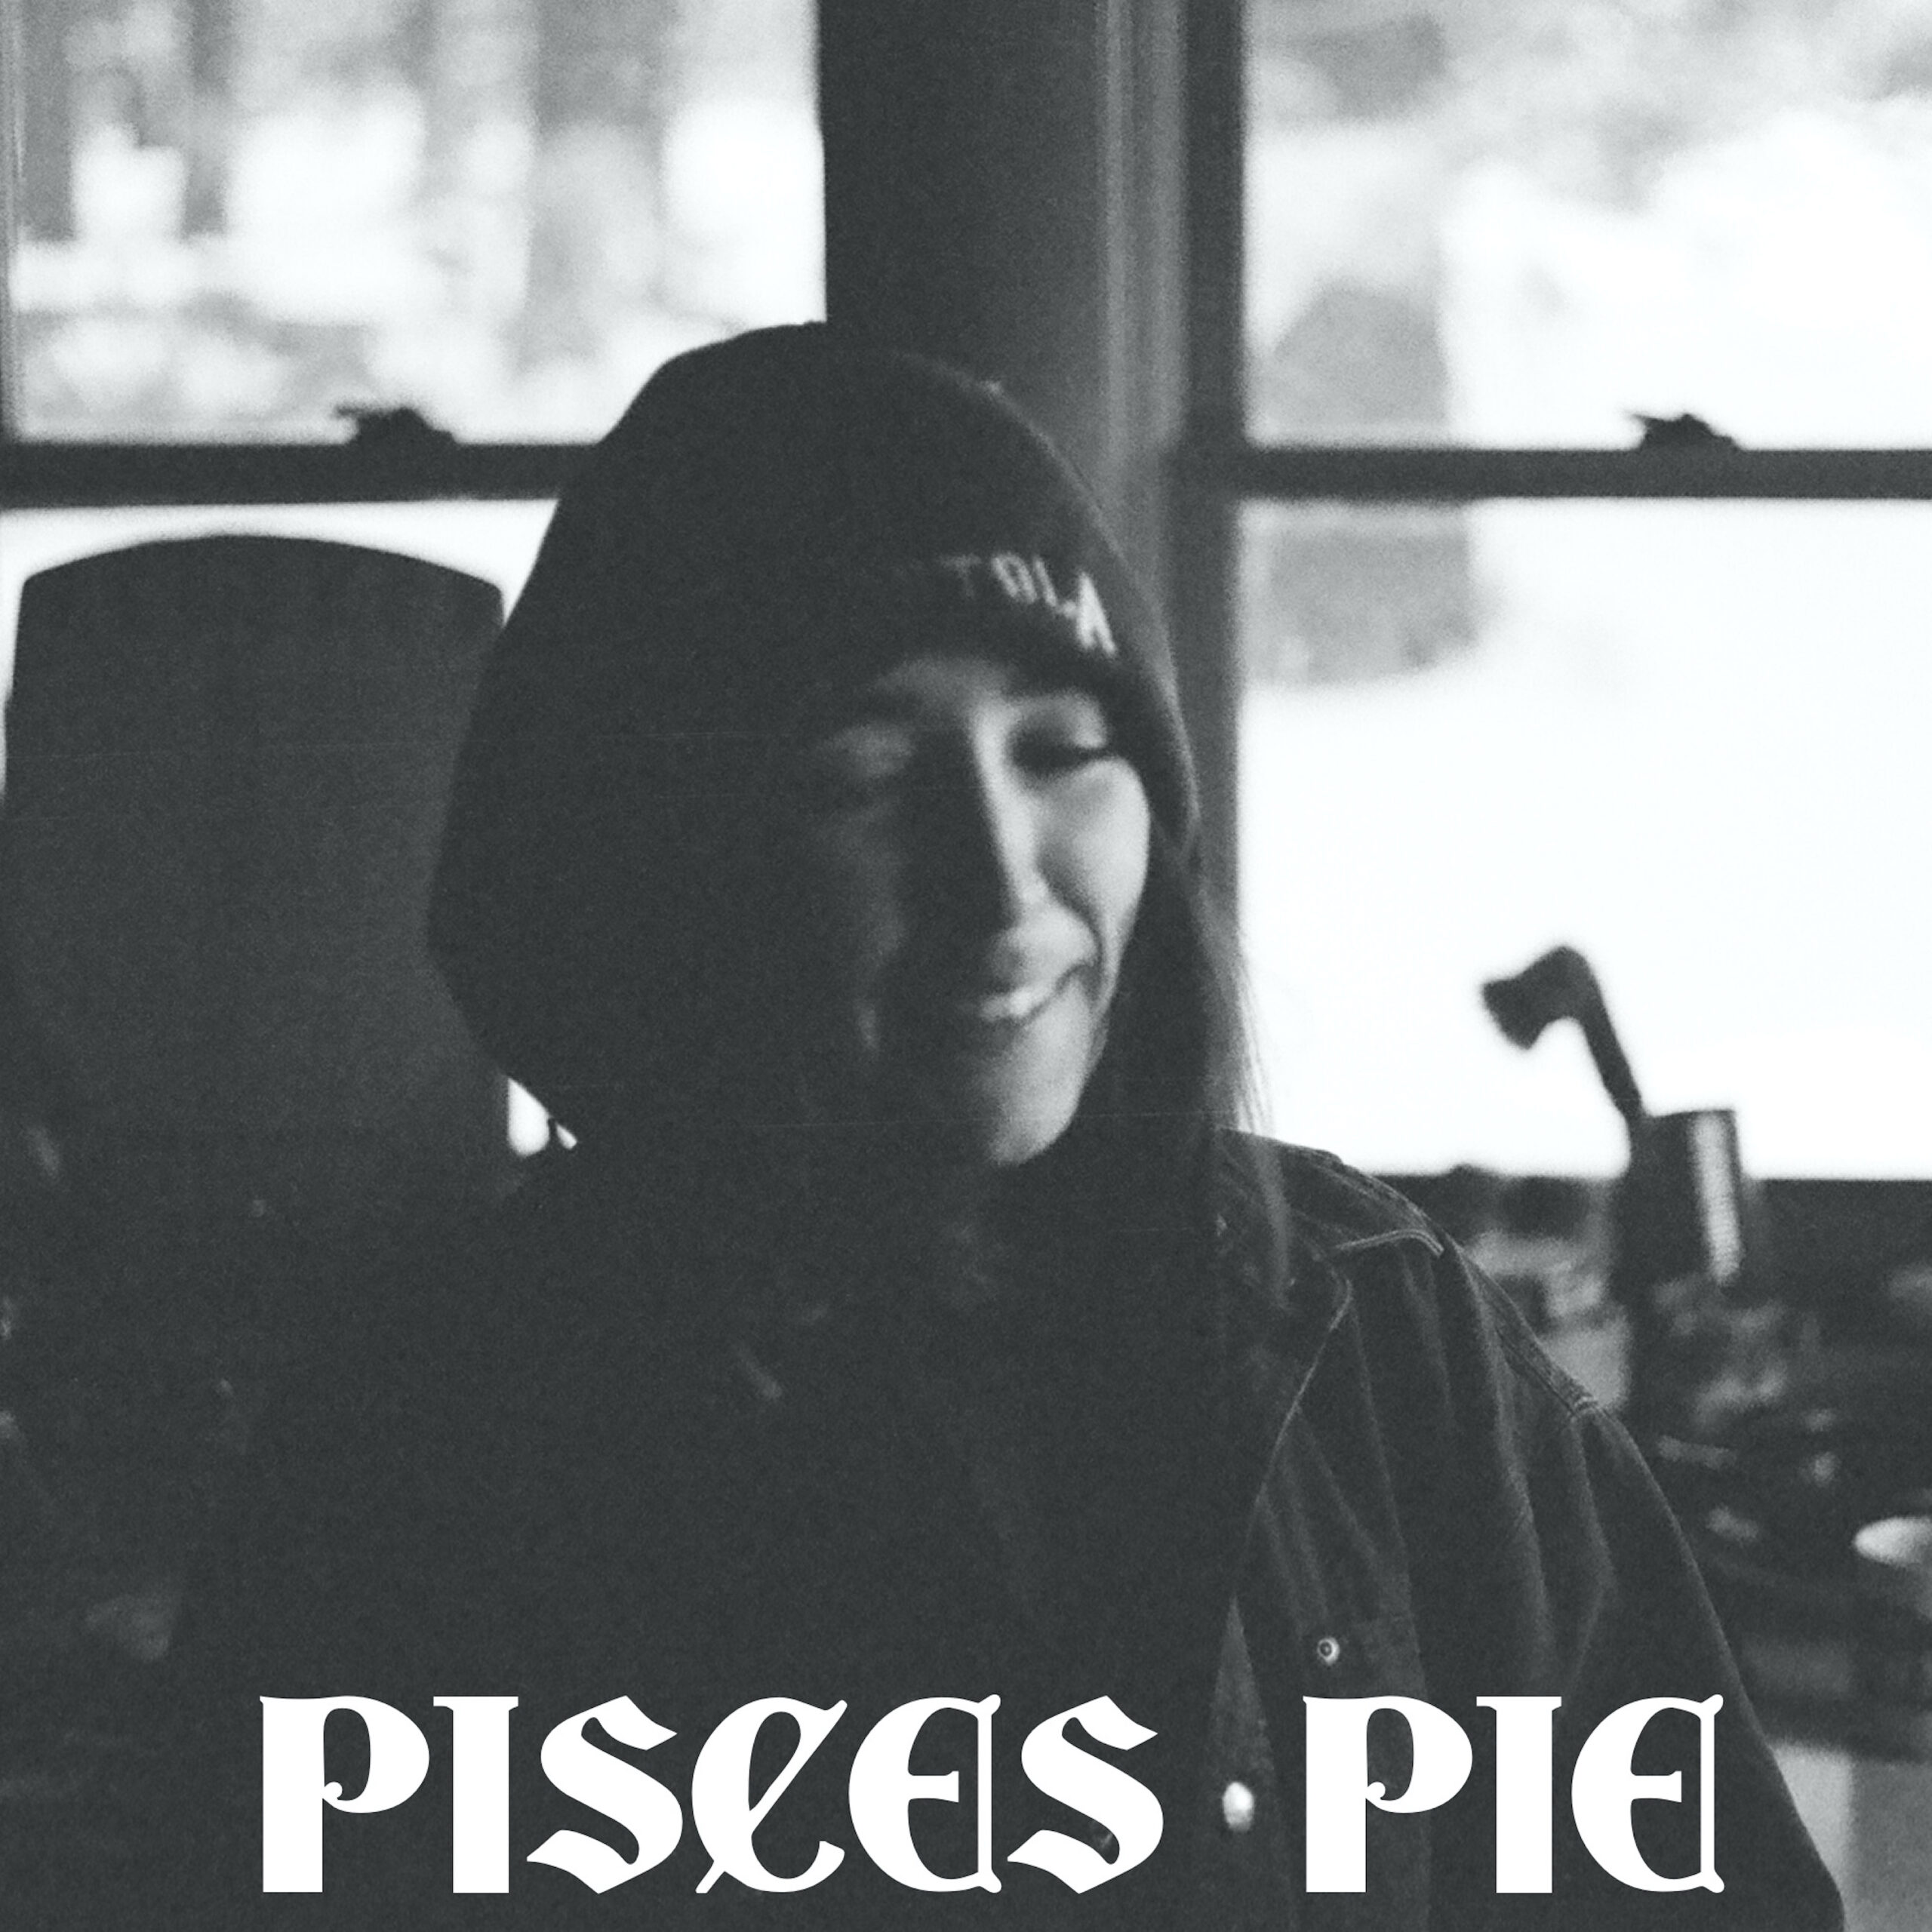 Odelet Impresses With New Album “Pisces Pie”